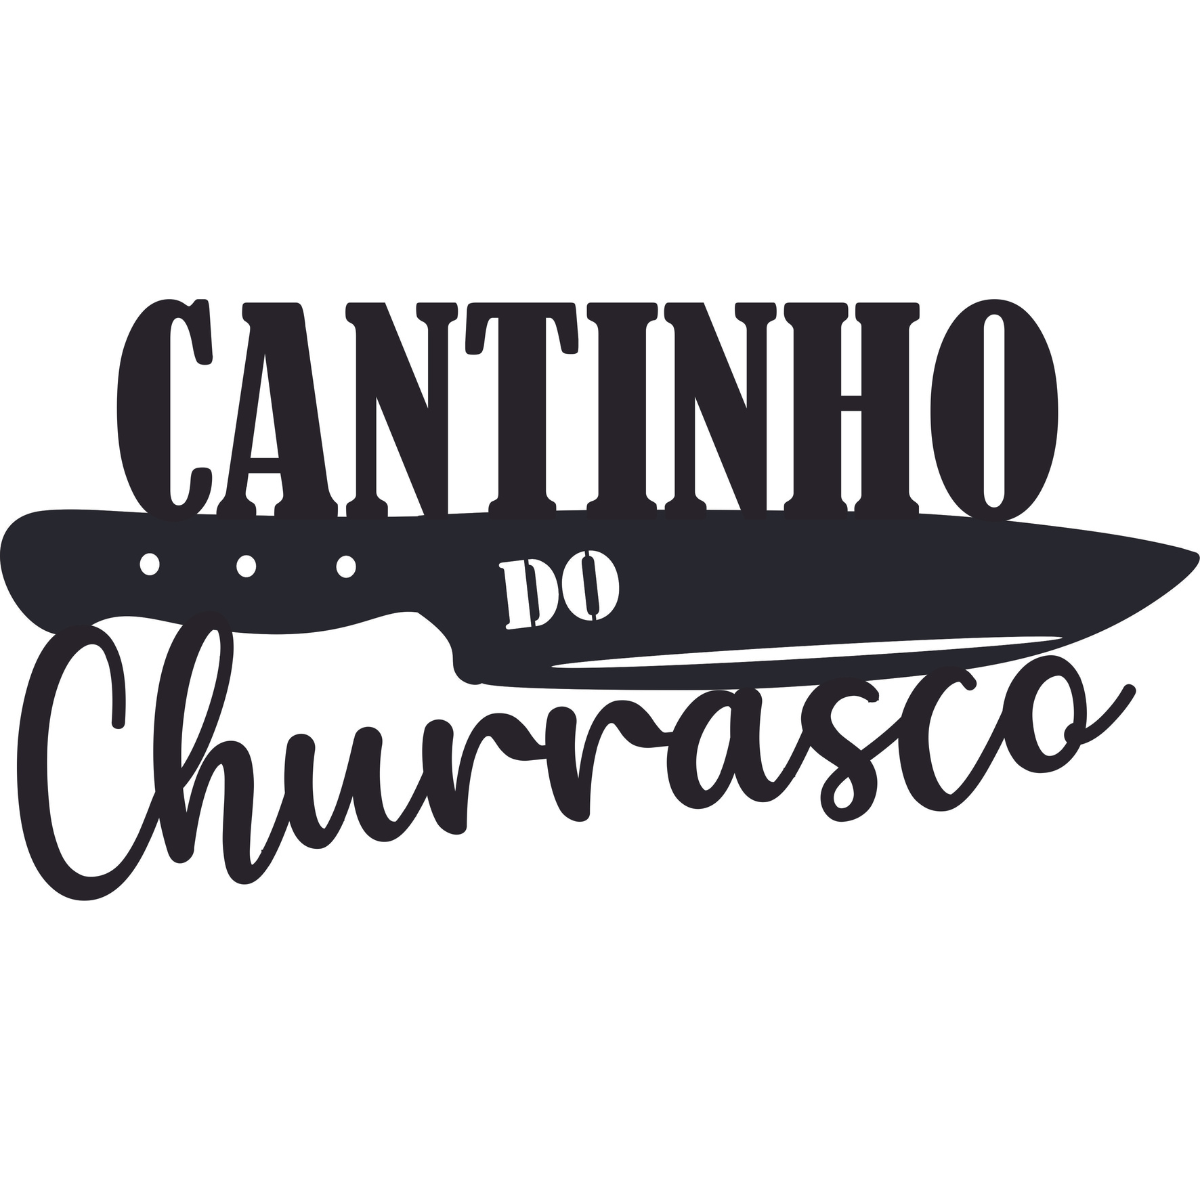 Cantinho Do Churrasco - MDF - Preto - Quadro Enfeite Churrasqueira - 30x15cm